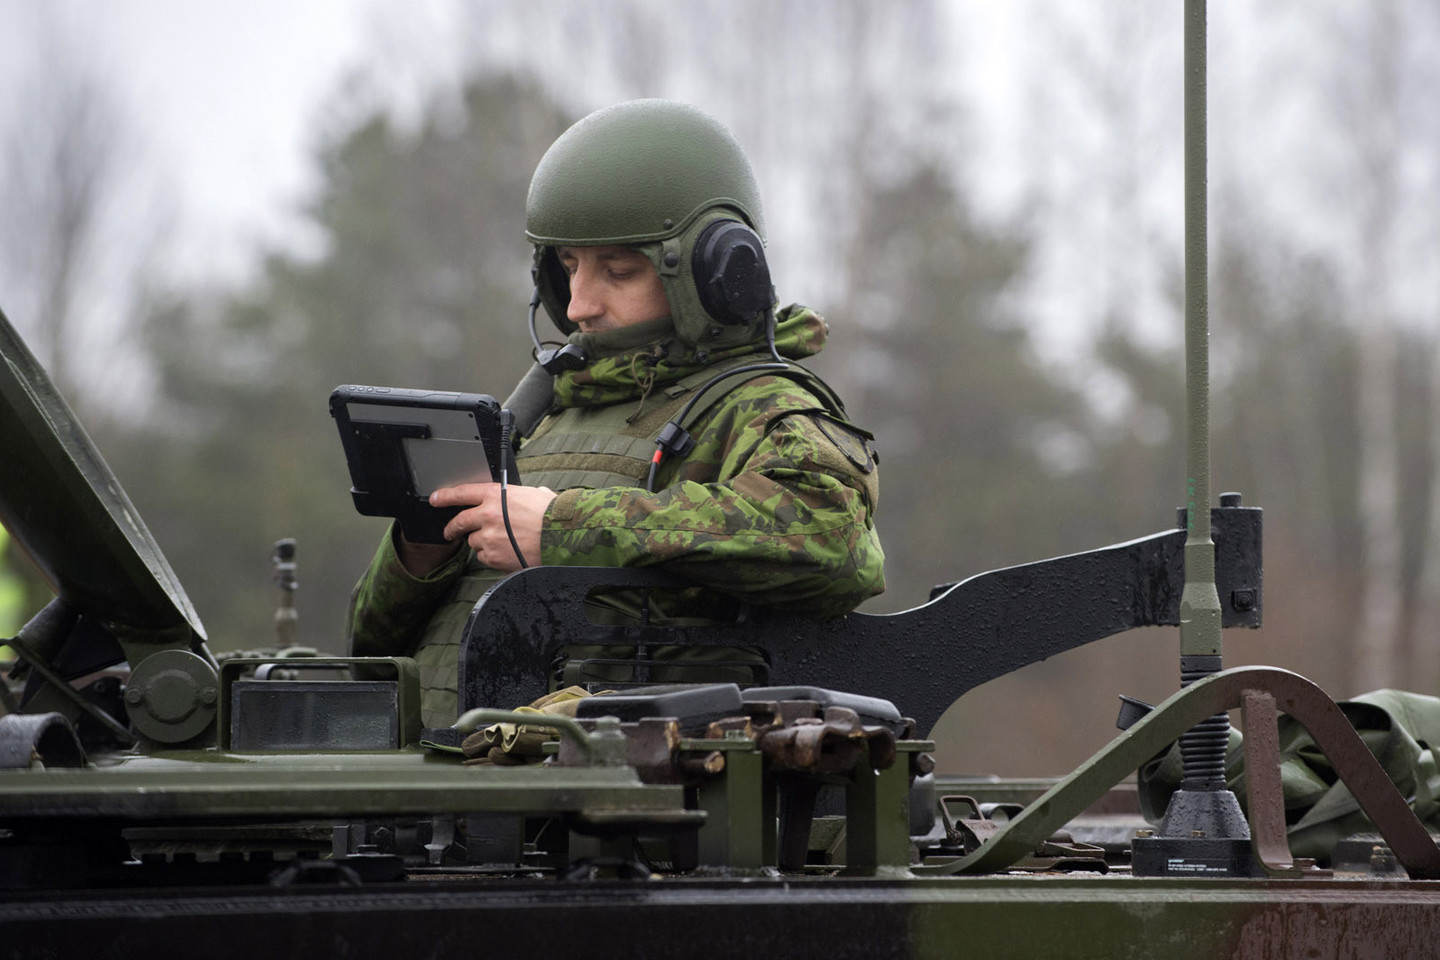 Bendra visų Lietuvos kariuomenės savaeigių minosvaidžių modernizavimo sutarties vertė – apie 6,6 mln. eurų.<br>KAM nuotr.